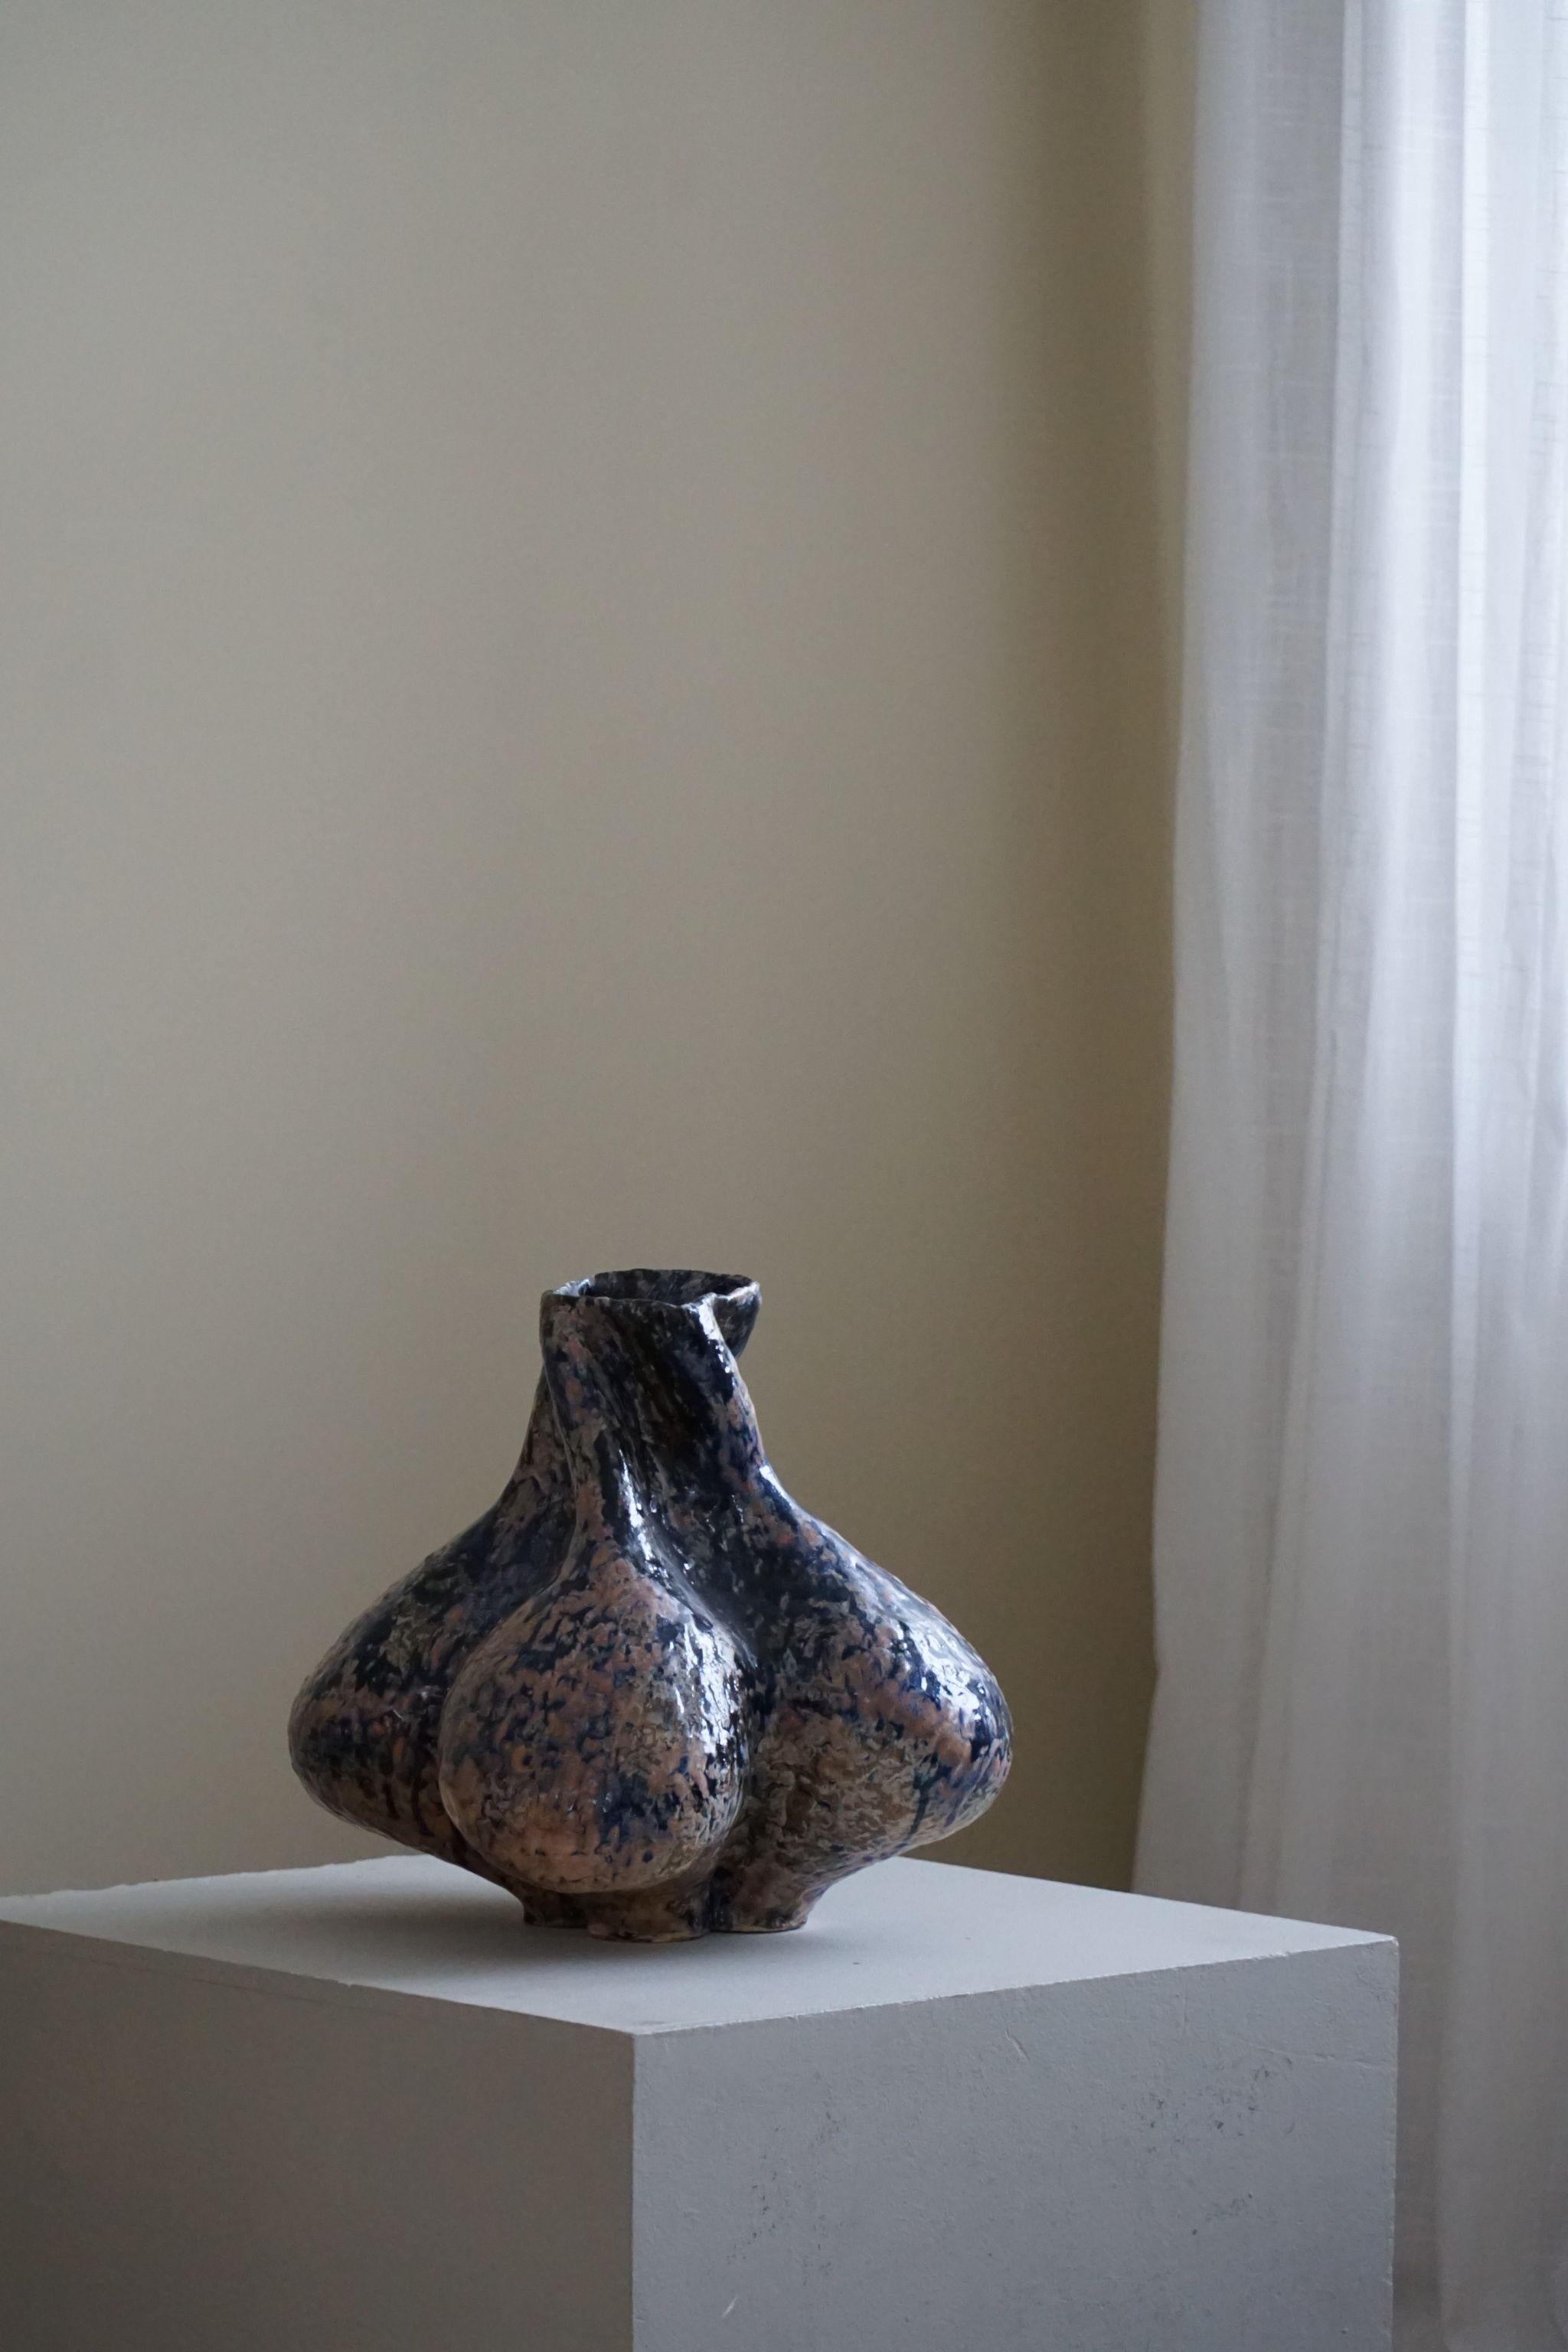 Grand vase en céramique avec glaçure dans des variations de couleurs bleues, noires et rouges, réalisé par l'artiste danois Ole Victor, 2023.

Ole Victor est un artiste danois qui a fréquenté l'Art Academy entre 1975 et 1980. Depuis, il crée des